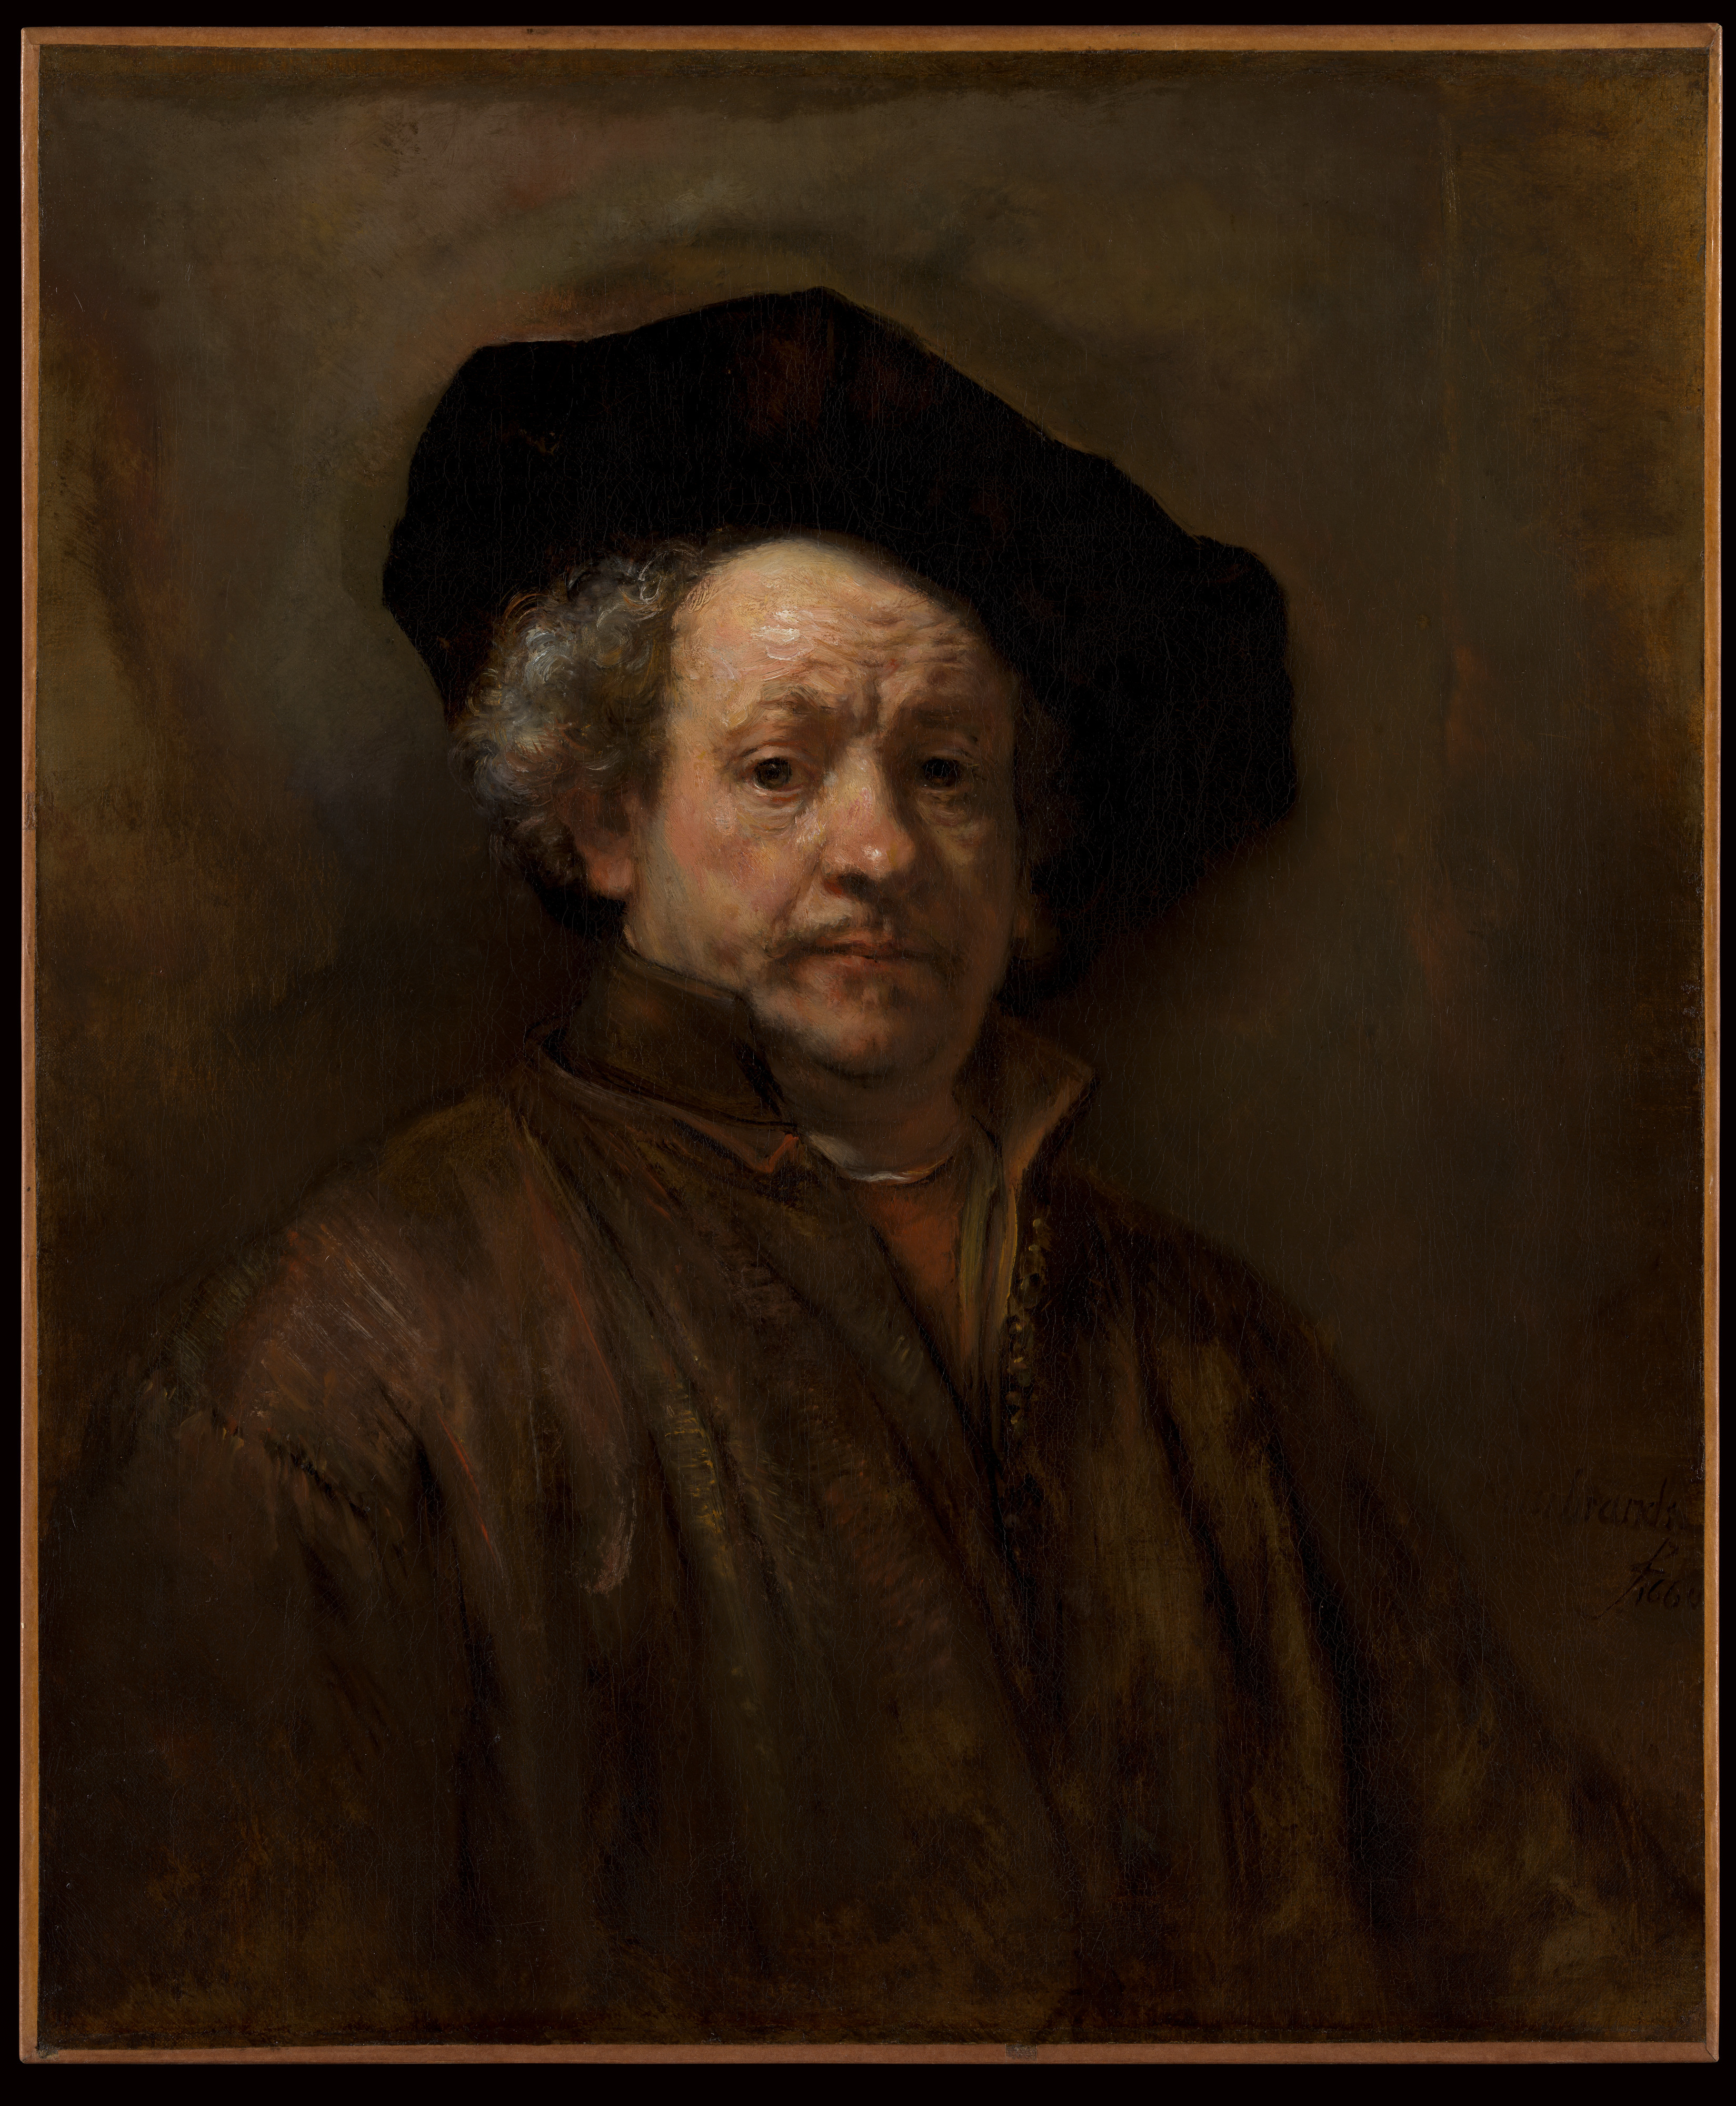 Автопортрет by Rembrandt van Rijn - 1660 - 31 5/8 x 26 1/2 in 